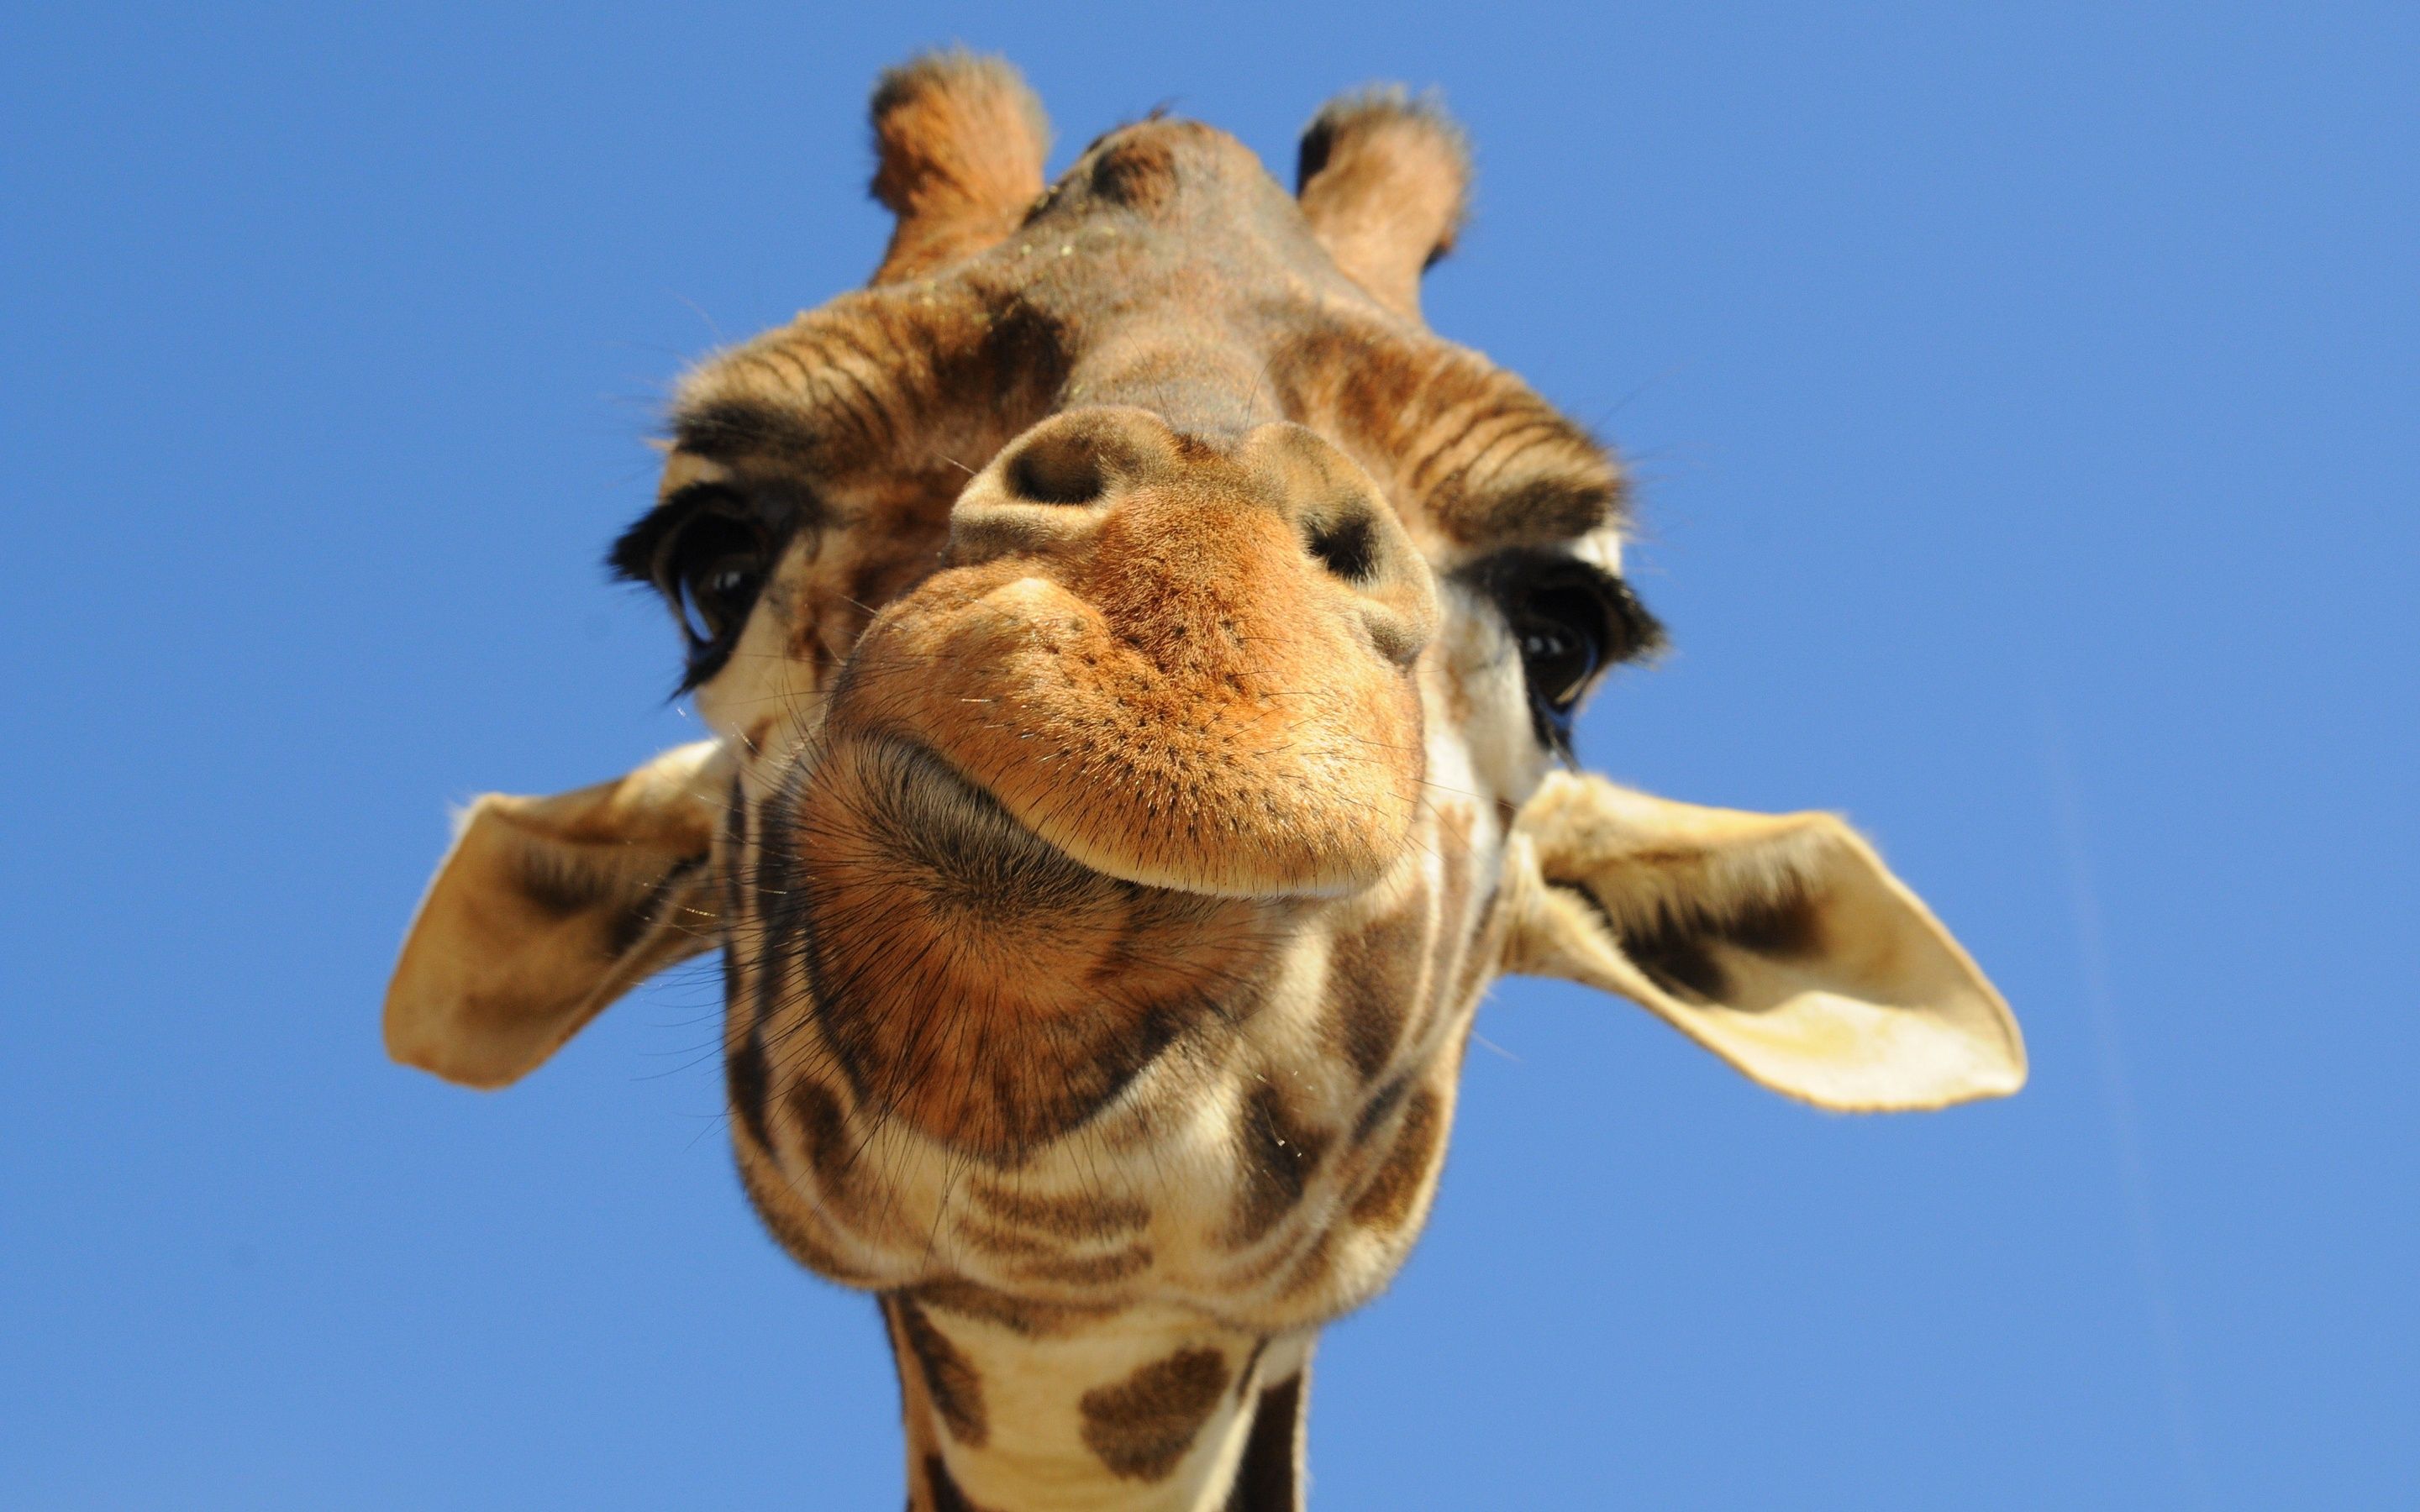 Giraffe Wallpaper | Wallpaper | Pinterest | Giraffe, Giraffe facts ...